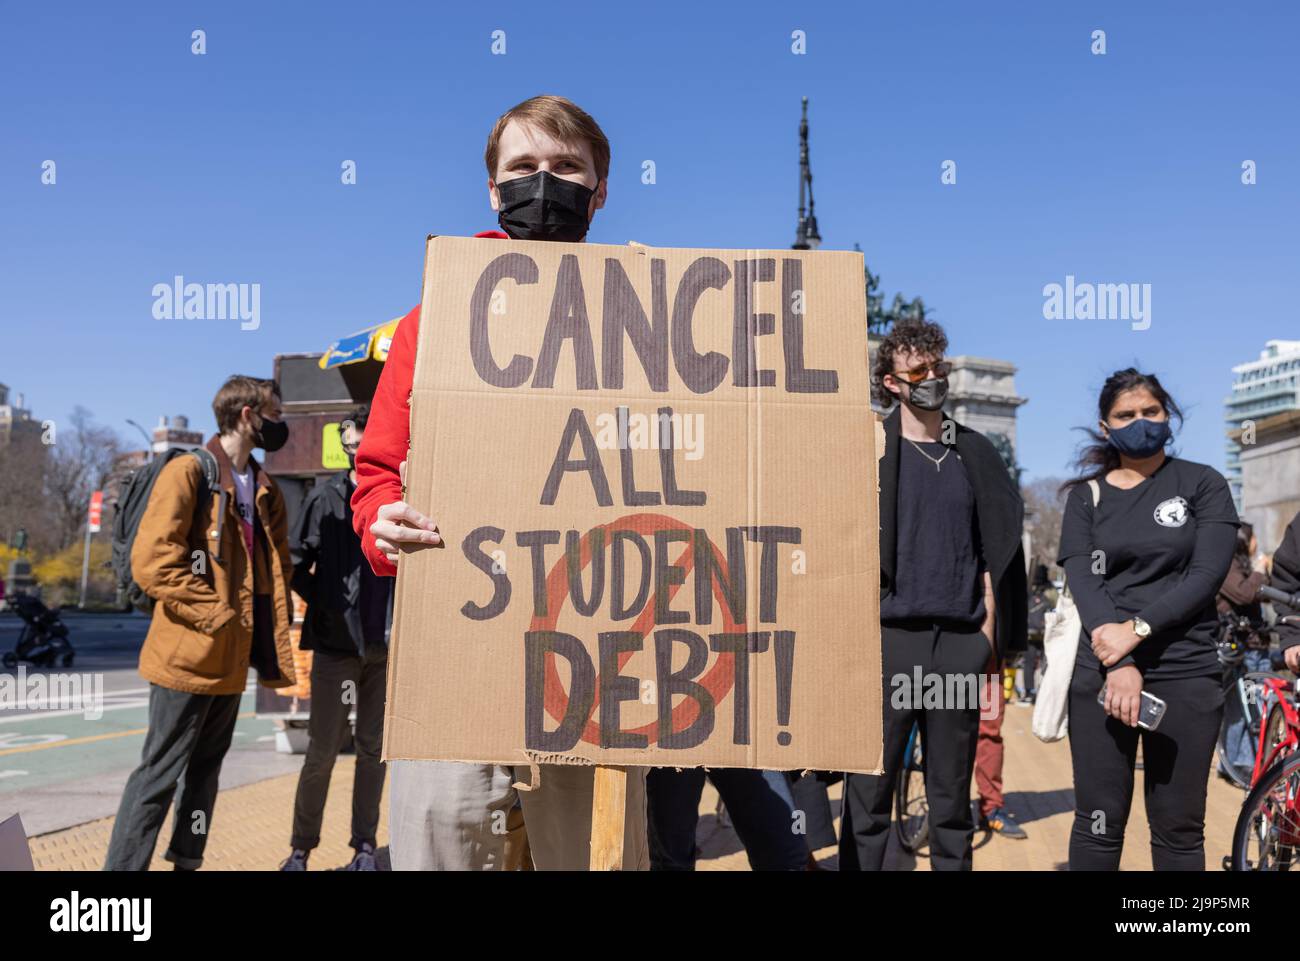 BROOKLYN, N.Y. – 3 aprile 2021: I manifestanti protestano nei pressi del Grand Army Plaza durante un raduno per cancellare i debiti di prestito degli studenti. Foto Stock